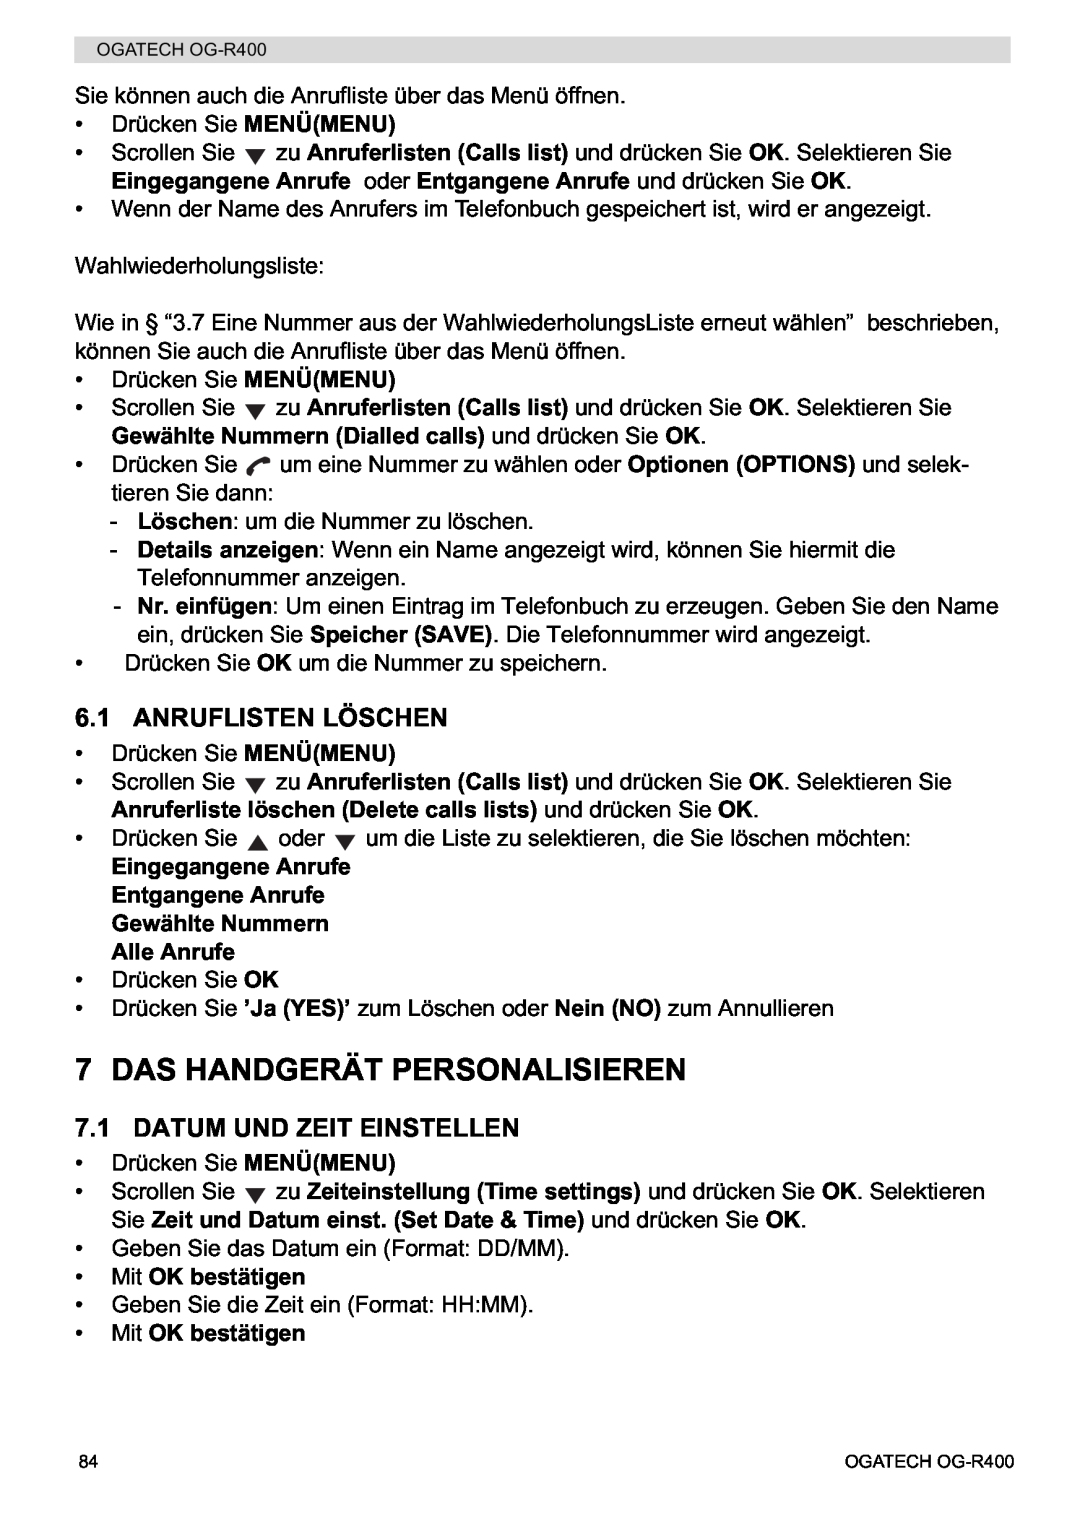 Topcom OG-R400 manual Das Handgerät Personalisieren, Anruflisten Löschen, Datum Und Zeit Einstellen, Mit OK bestätigen 